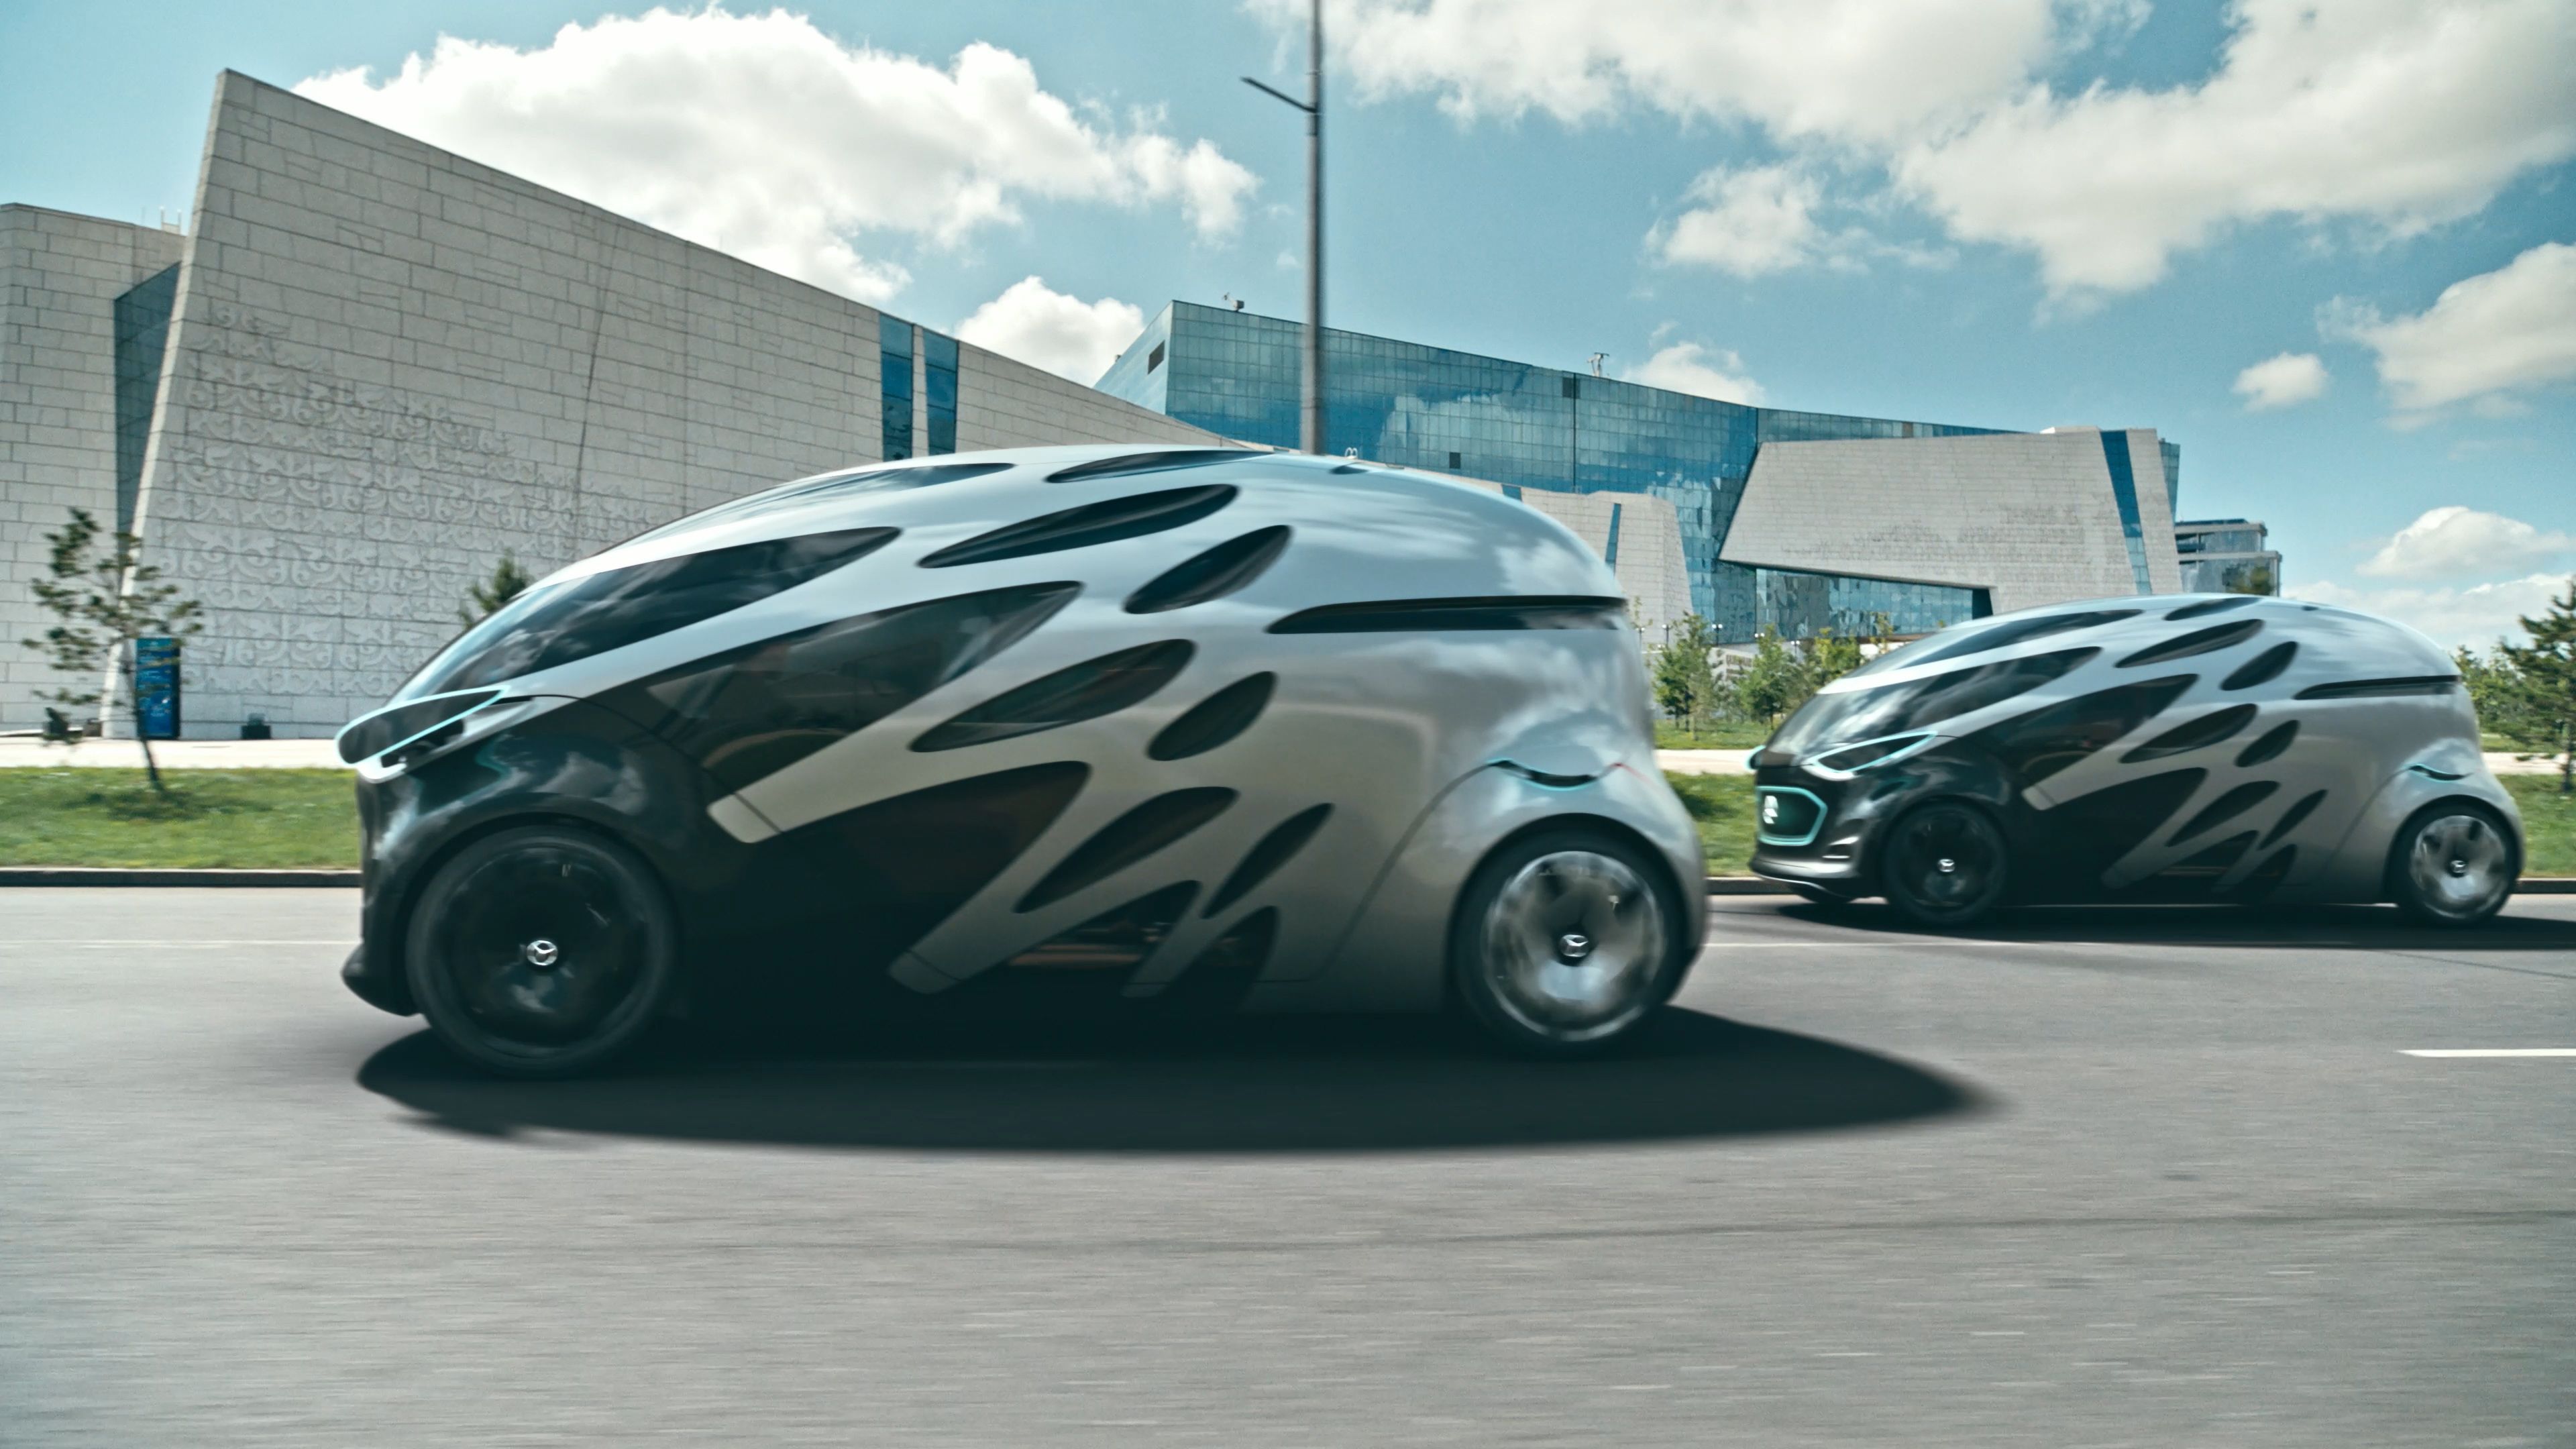 Tak może wyglądać nowy pojazd autonomiczny Daimlera (fot. mat. pras.)